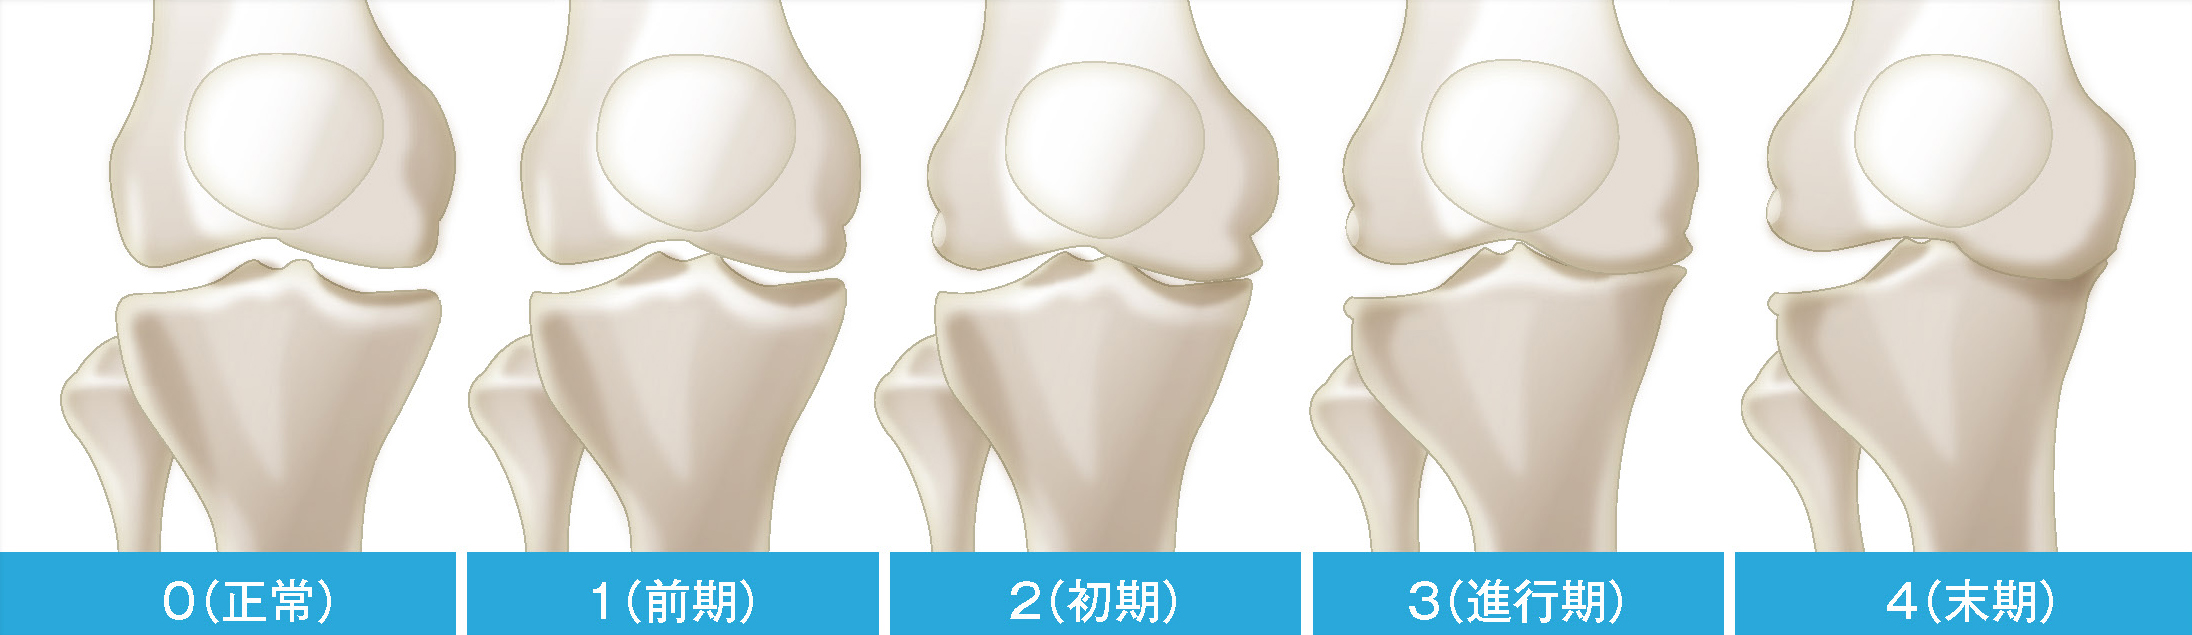 変形性膝関節症の5段階